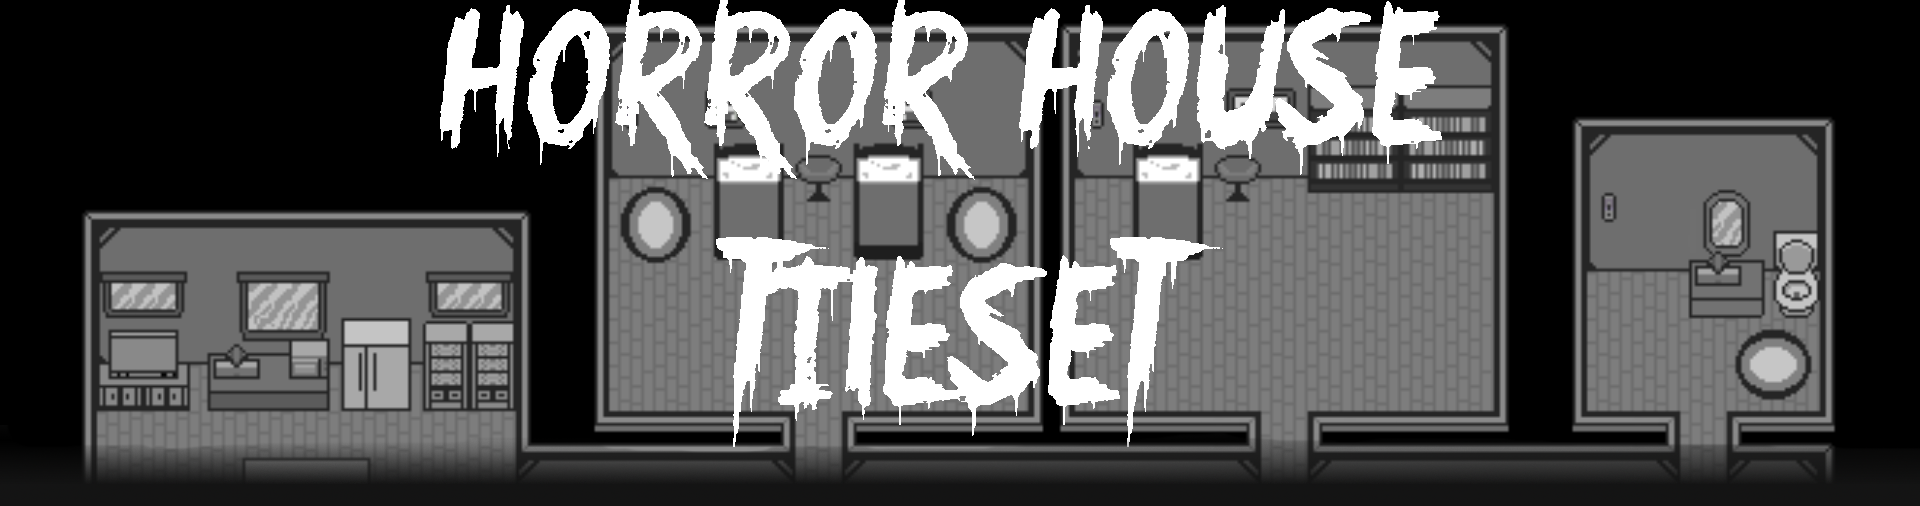 Horror House Tileset